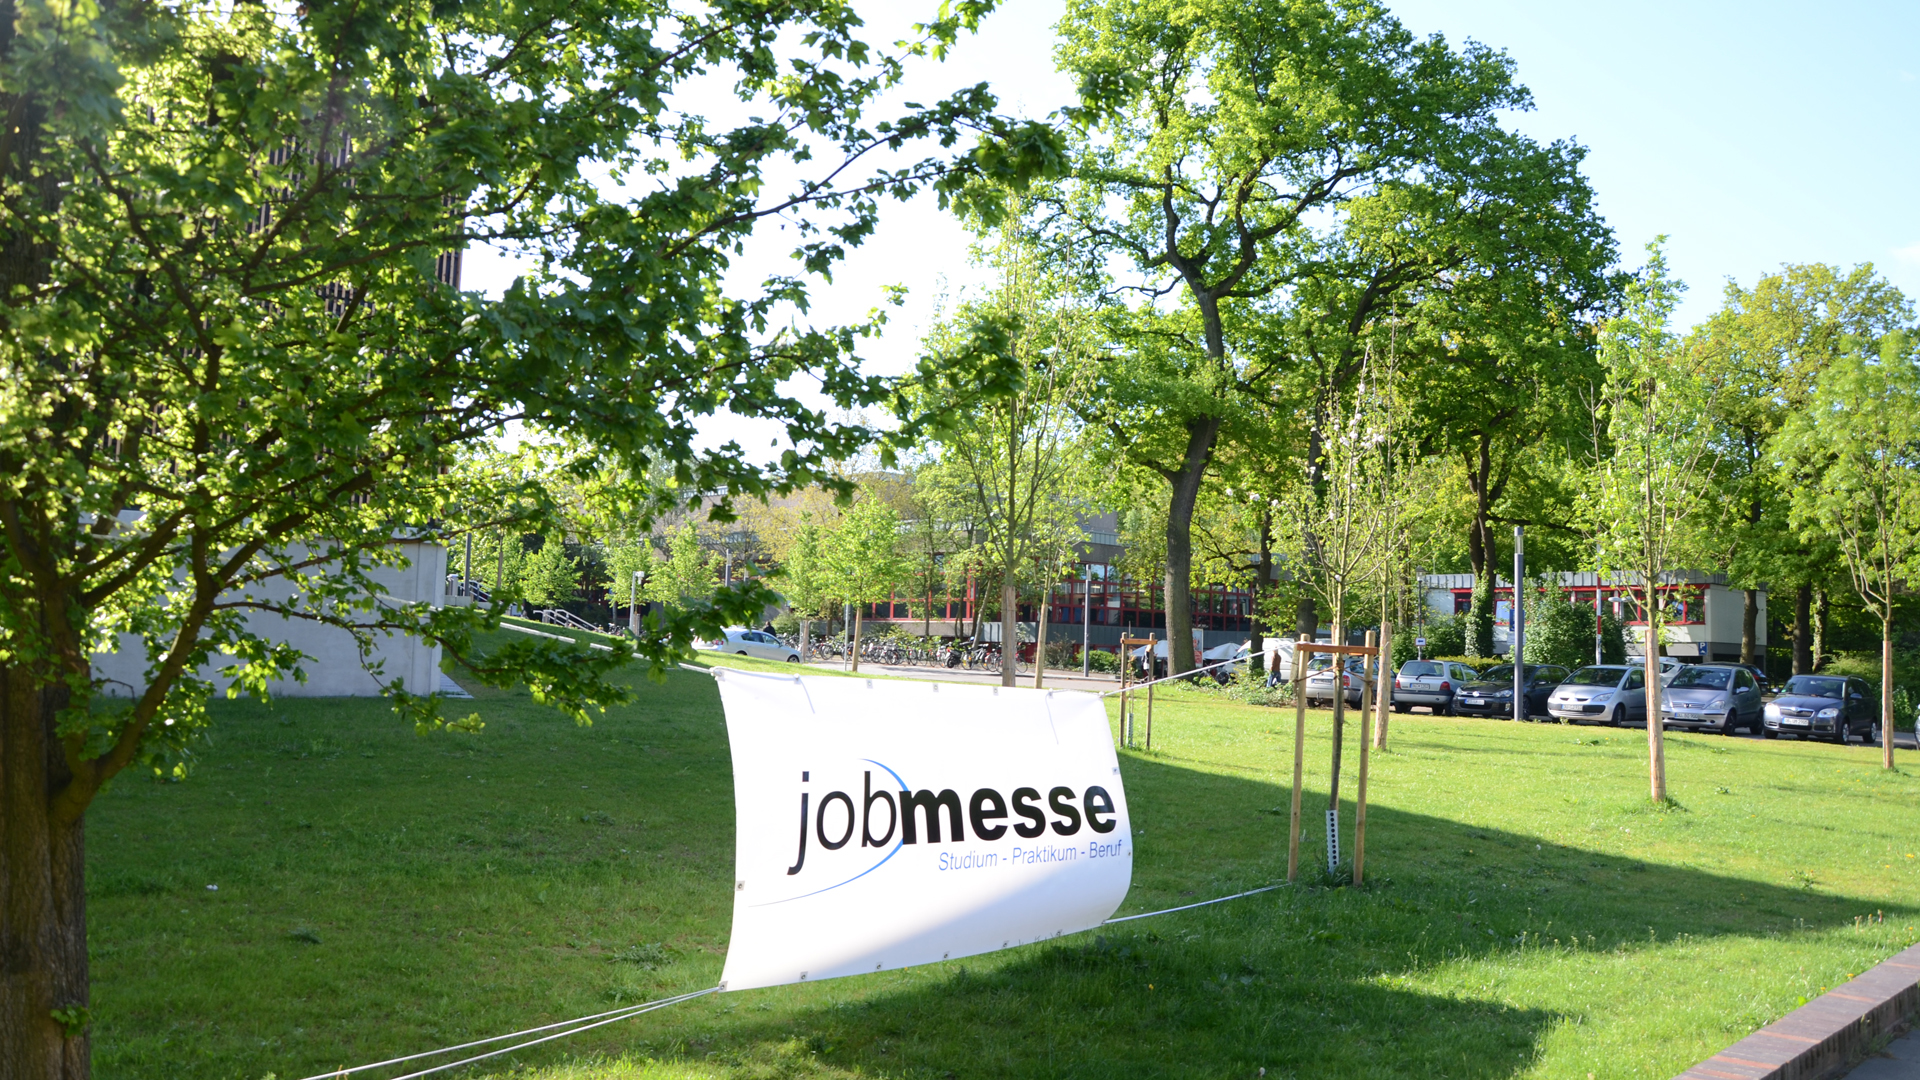 Jobmesse-Banner vor Hörsaalzentrum Campus Duisburg